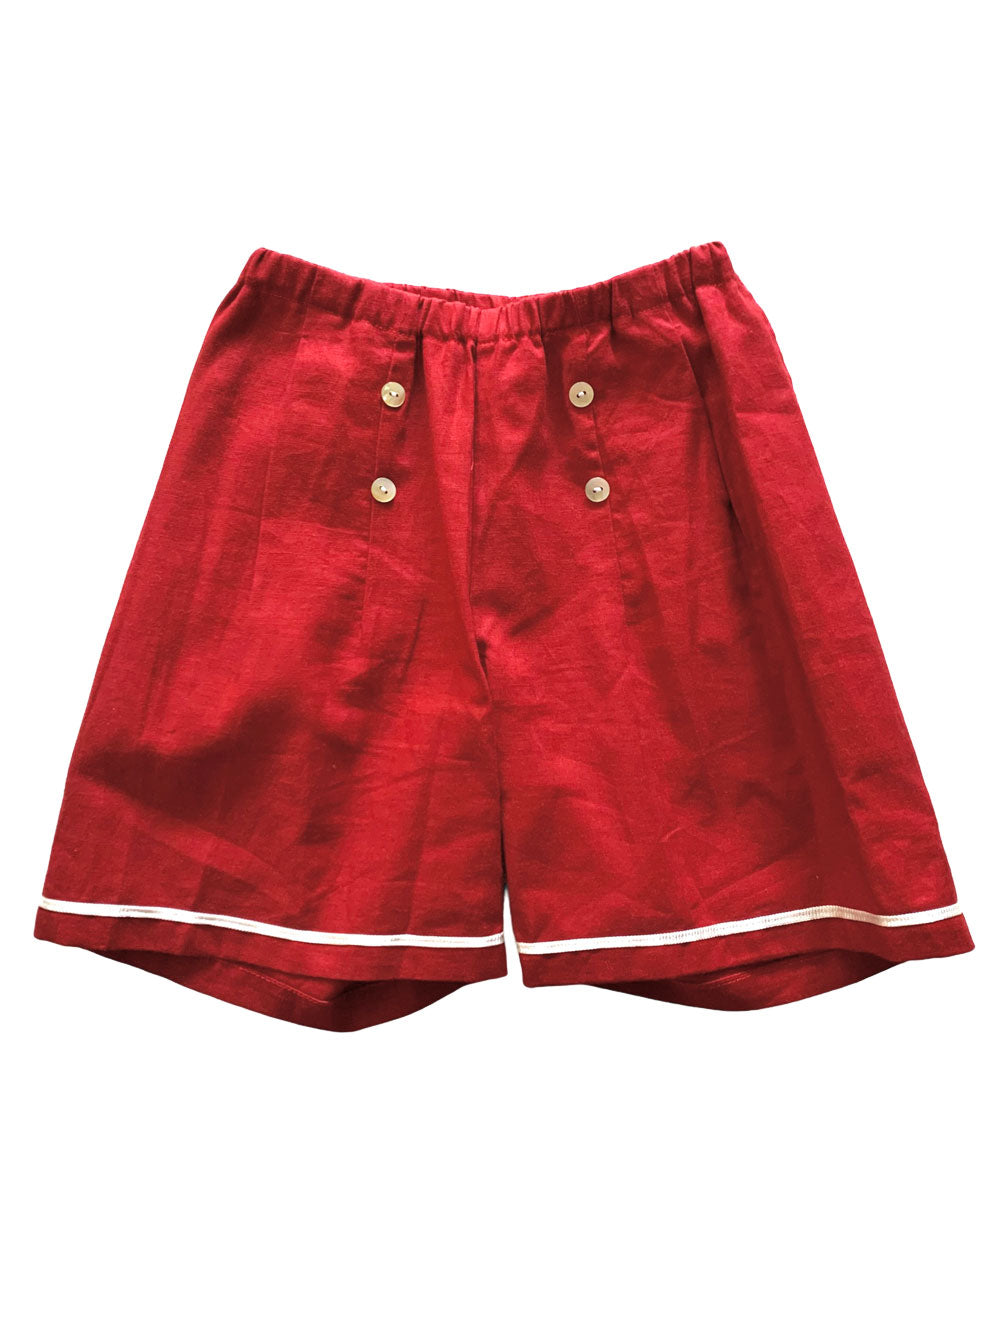 Bordeaux Sailor Shorts